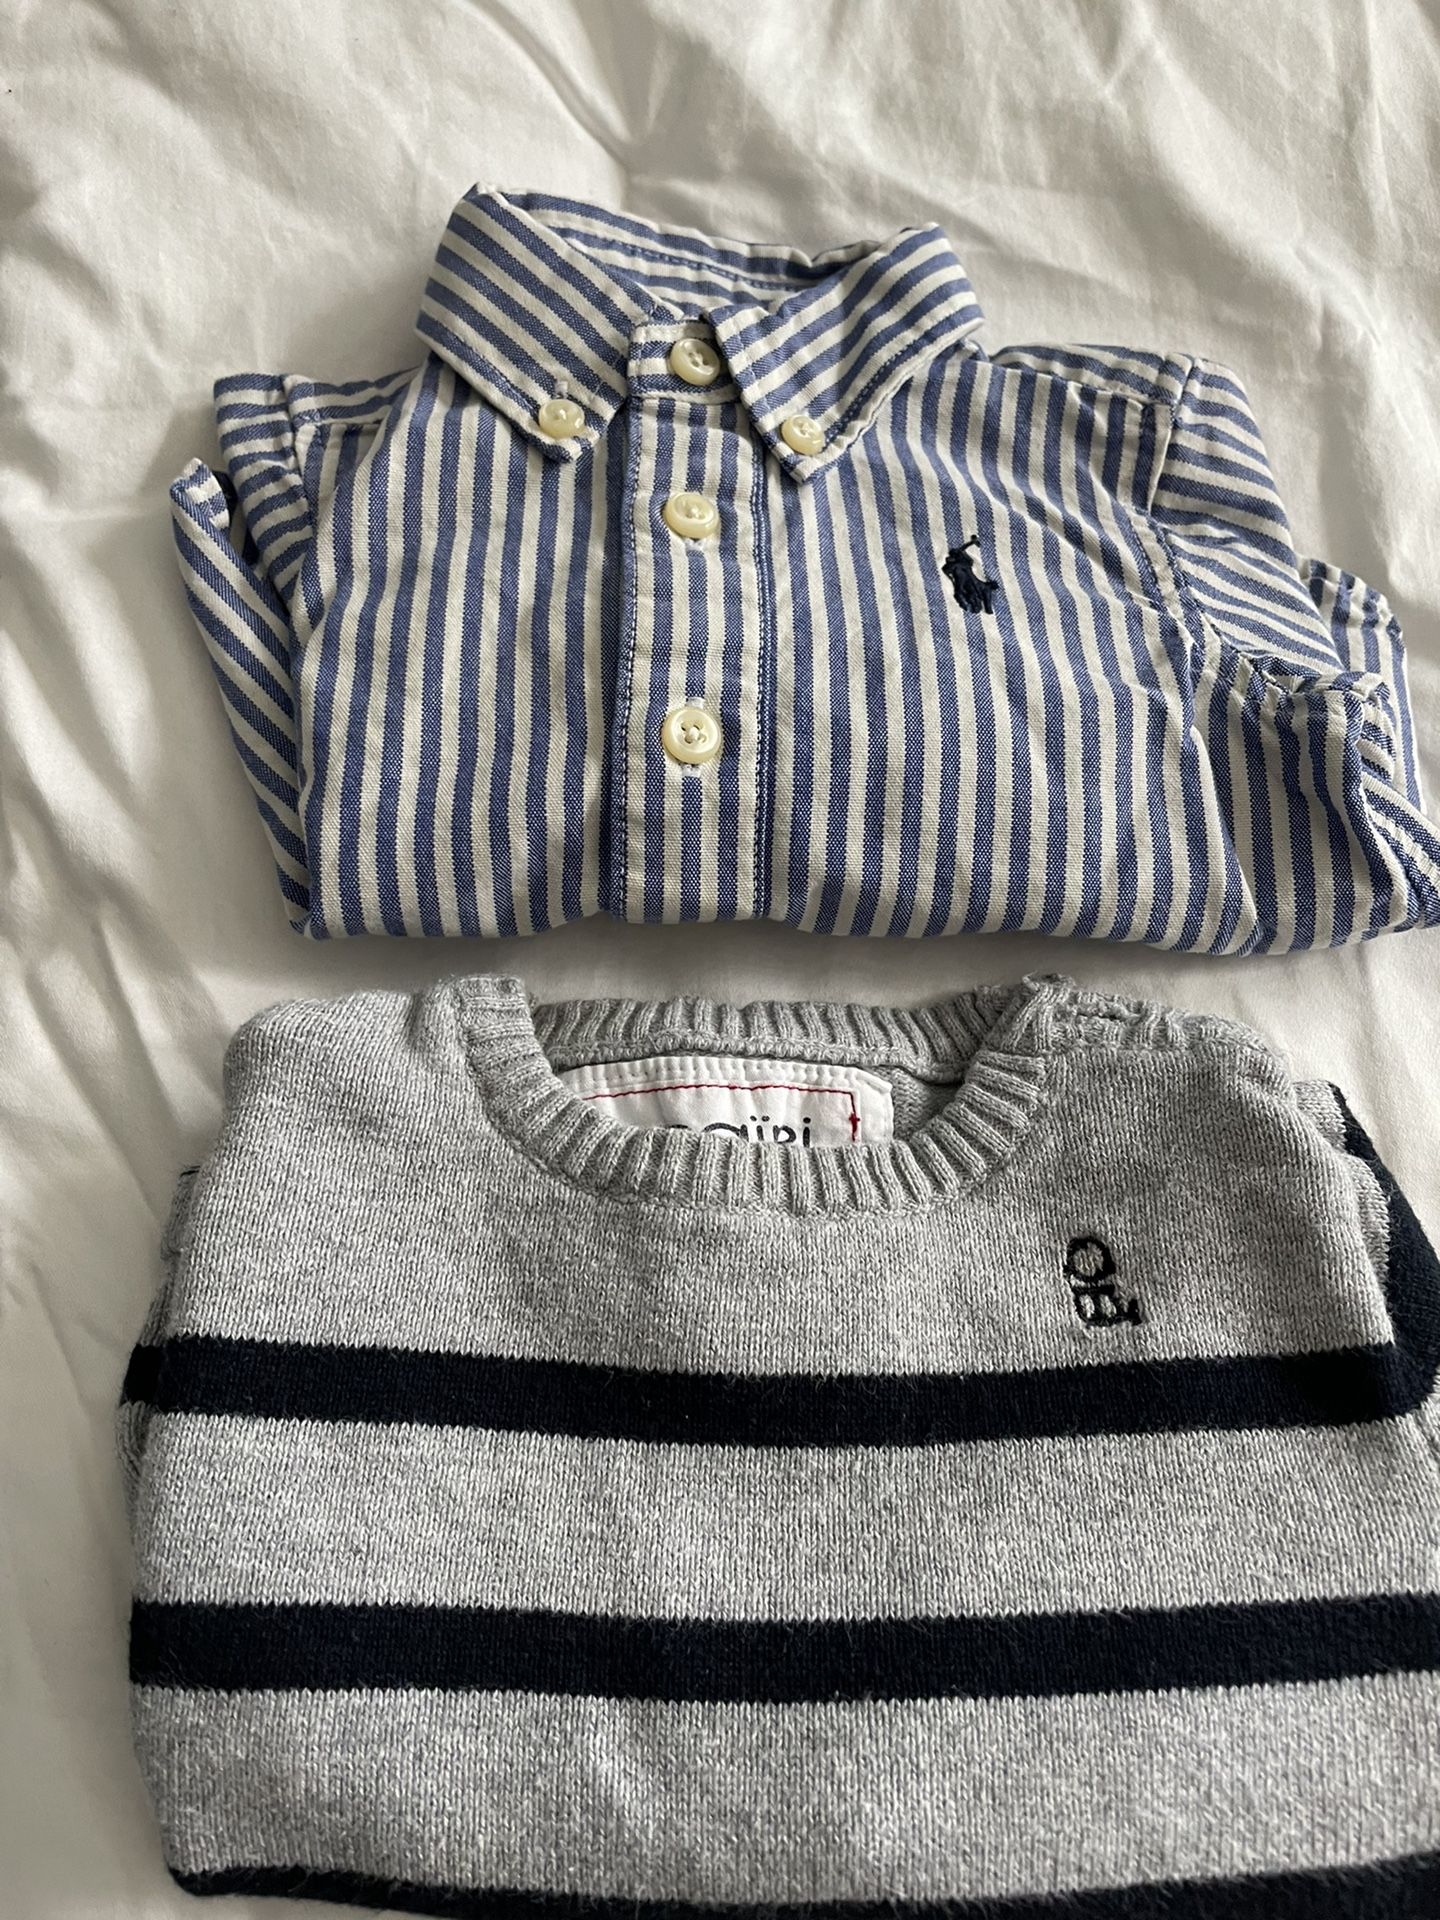 Baby Boy Obaibi Sweater & Ralph Lauren Shirt